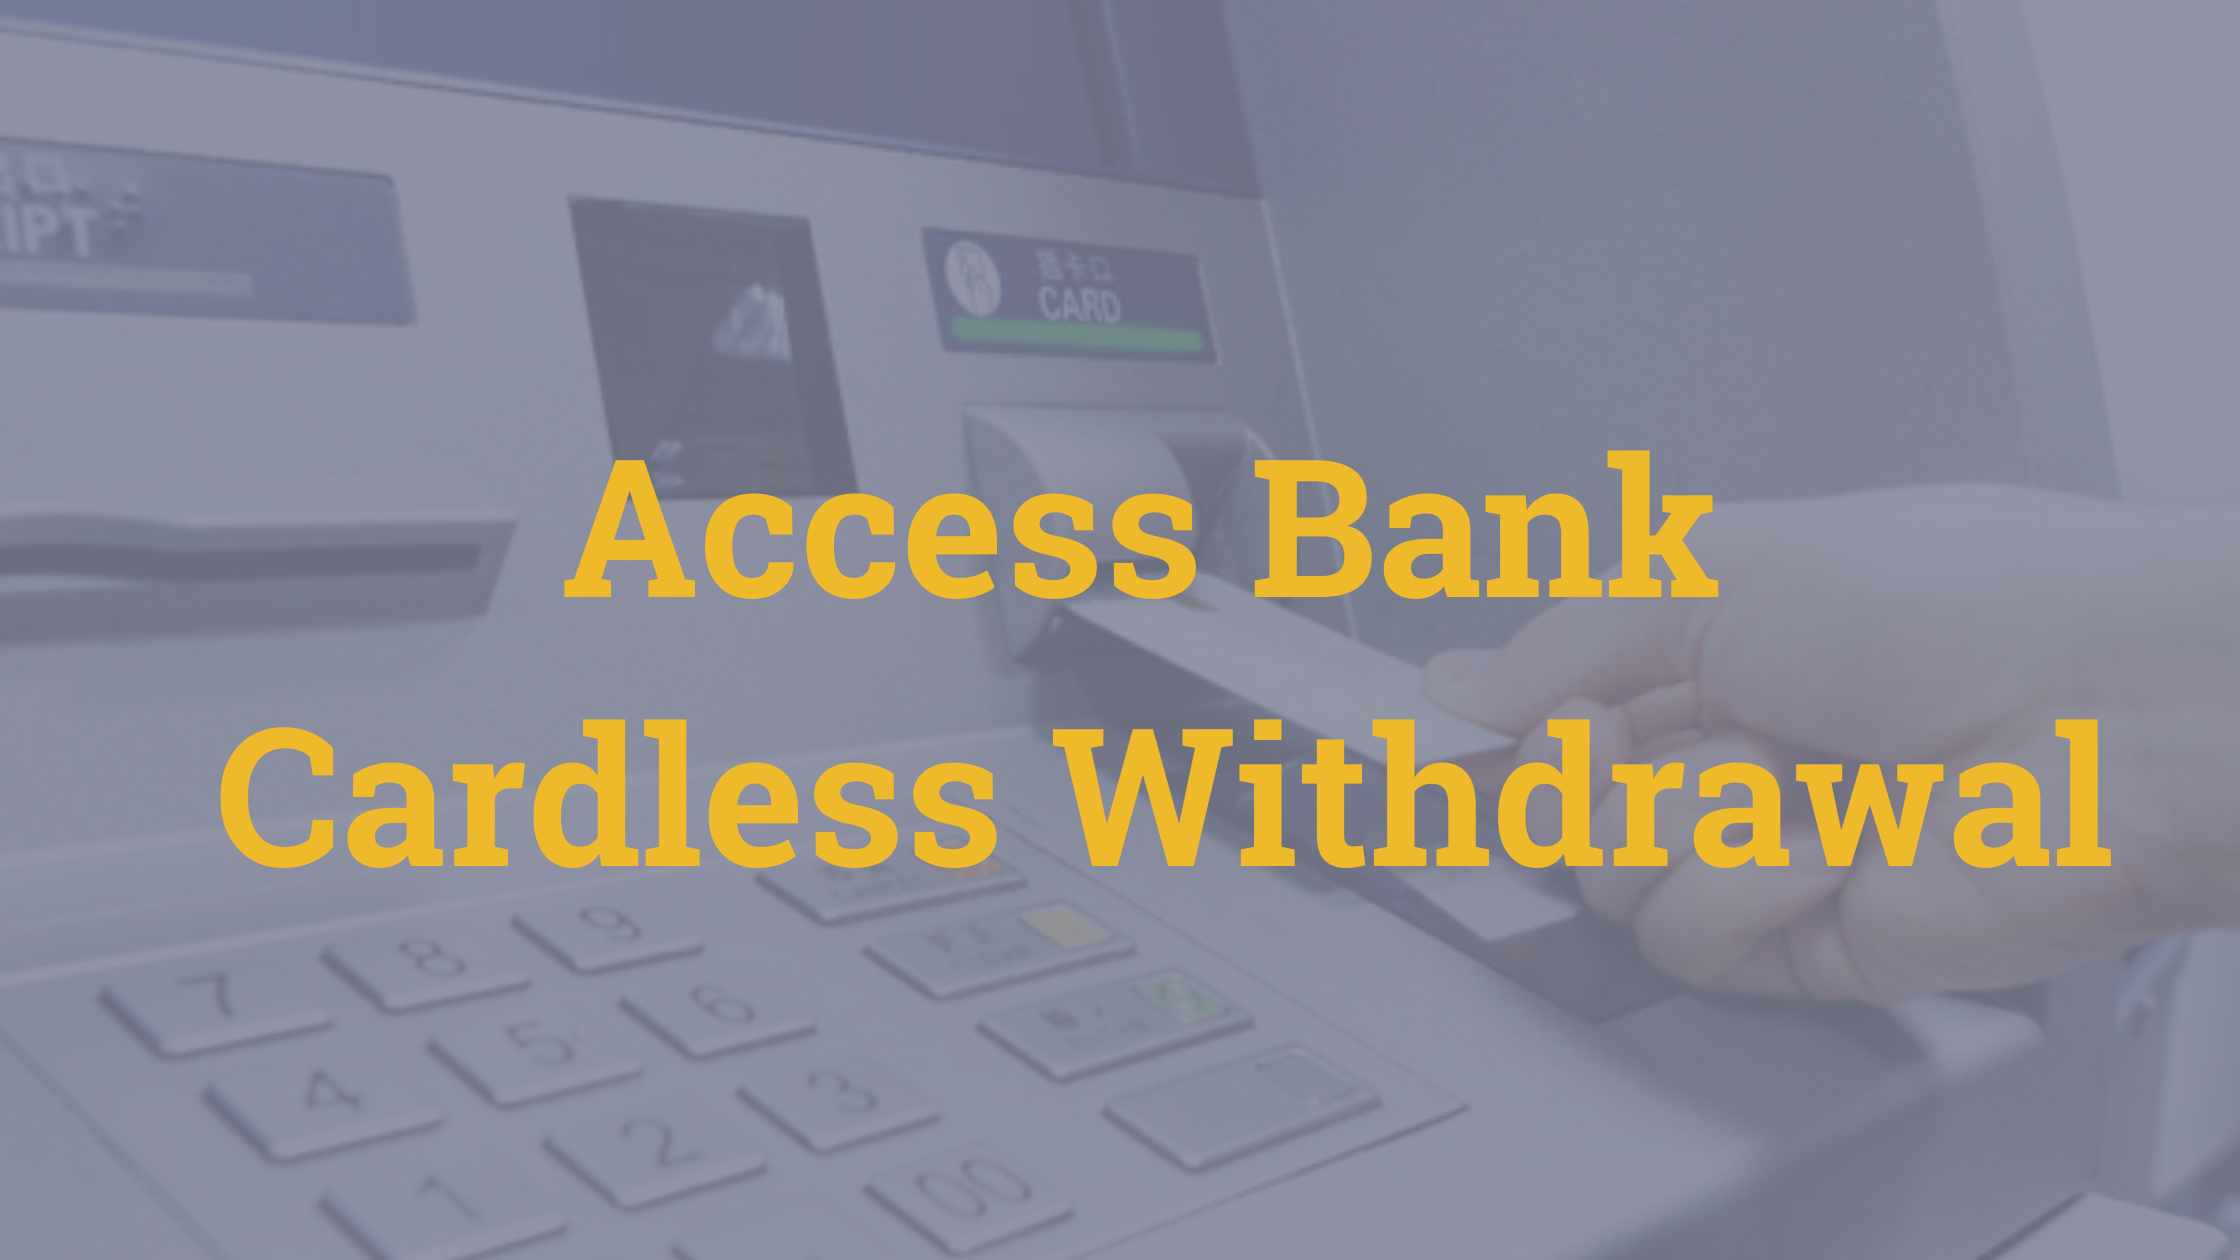 Access Bank Cardless Withdrawal